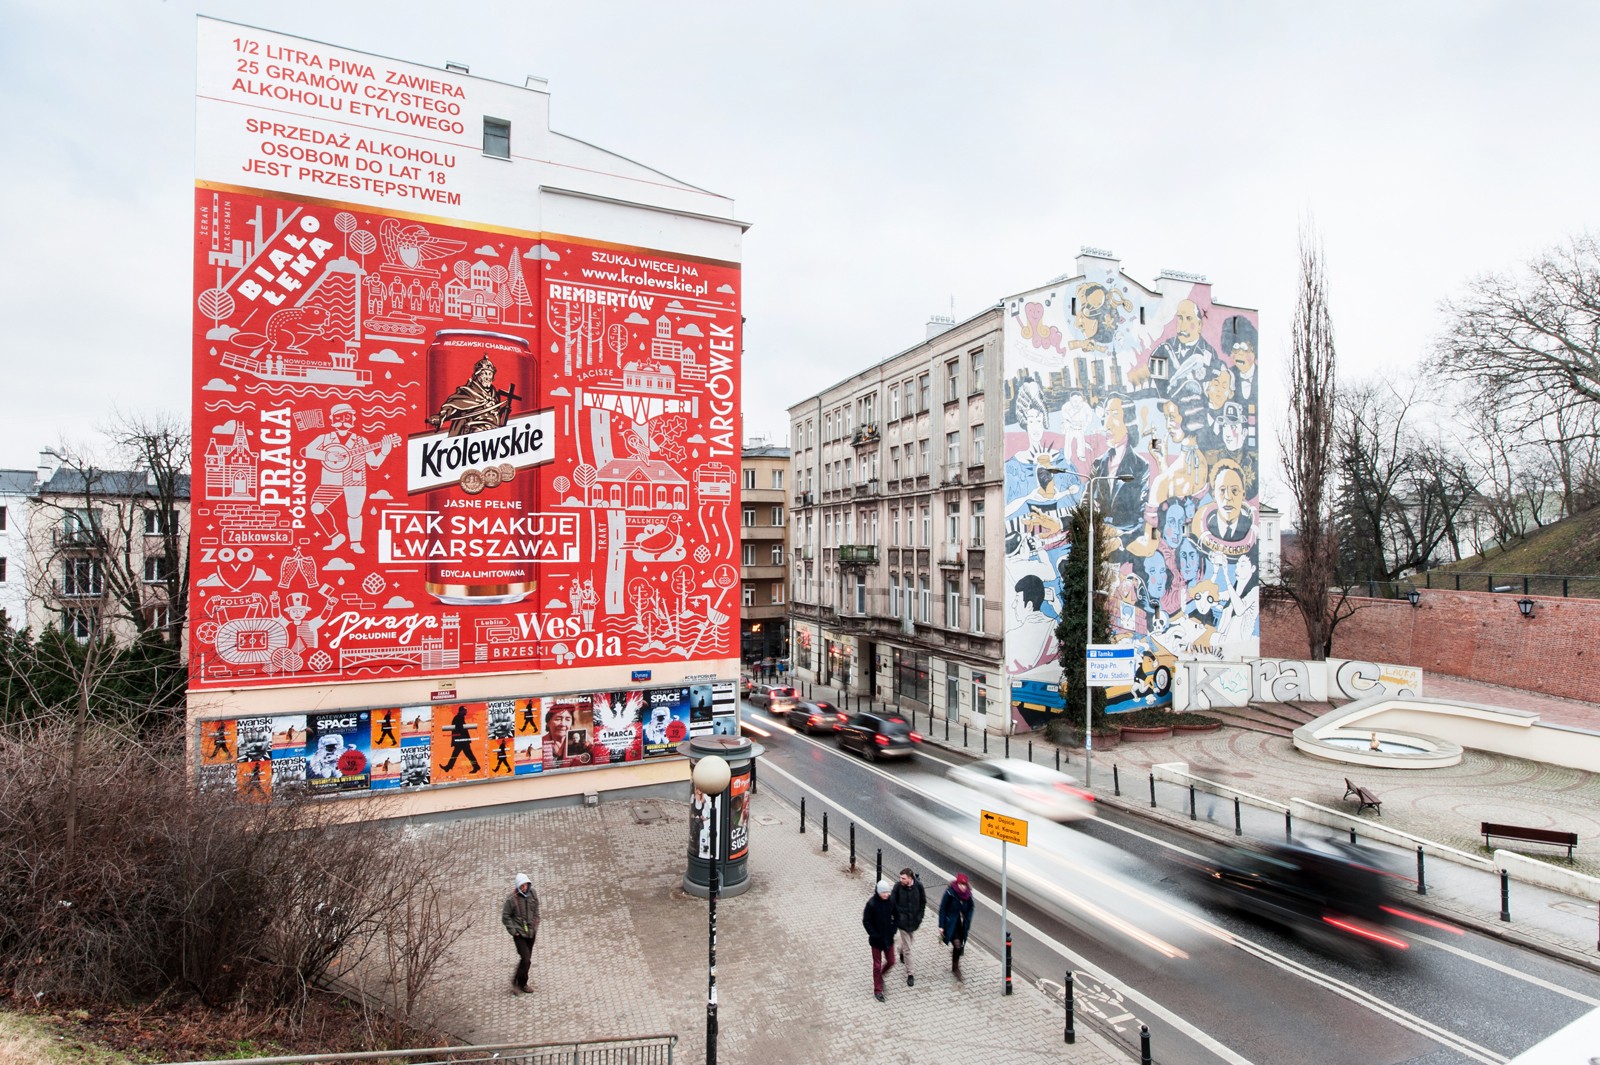 Das Mural im Auftrag der Marke Królewskie in Warschau, Tamka-Straße | Krolewskie | Portfolio